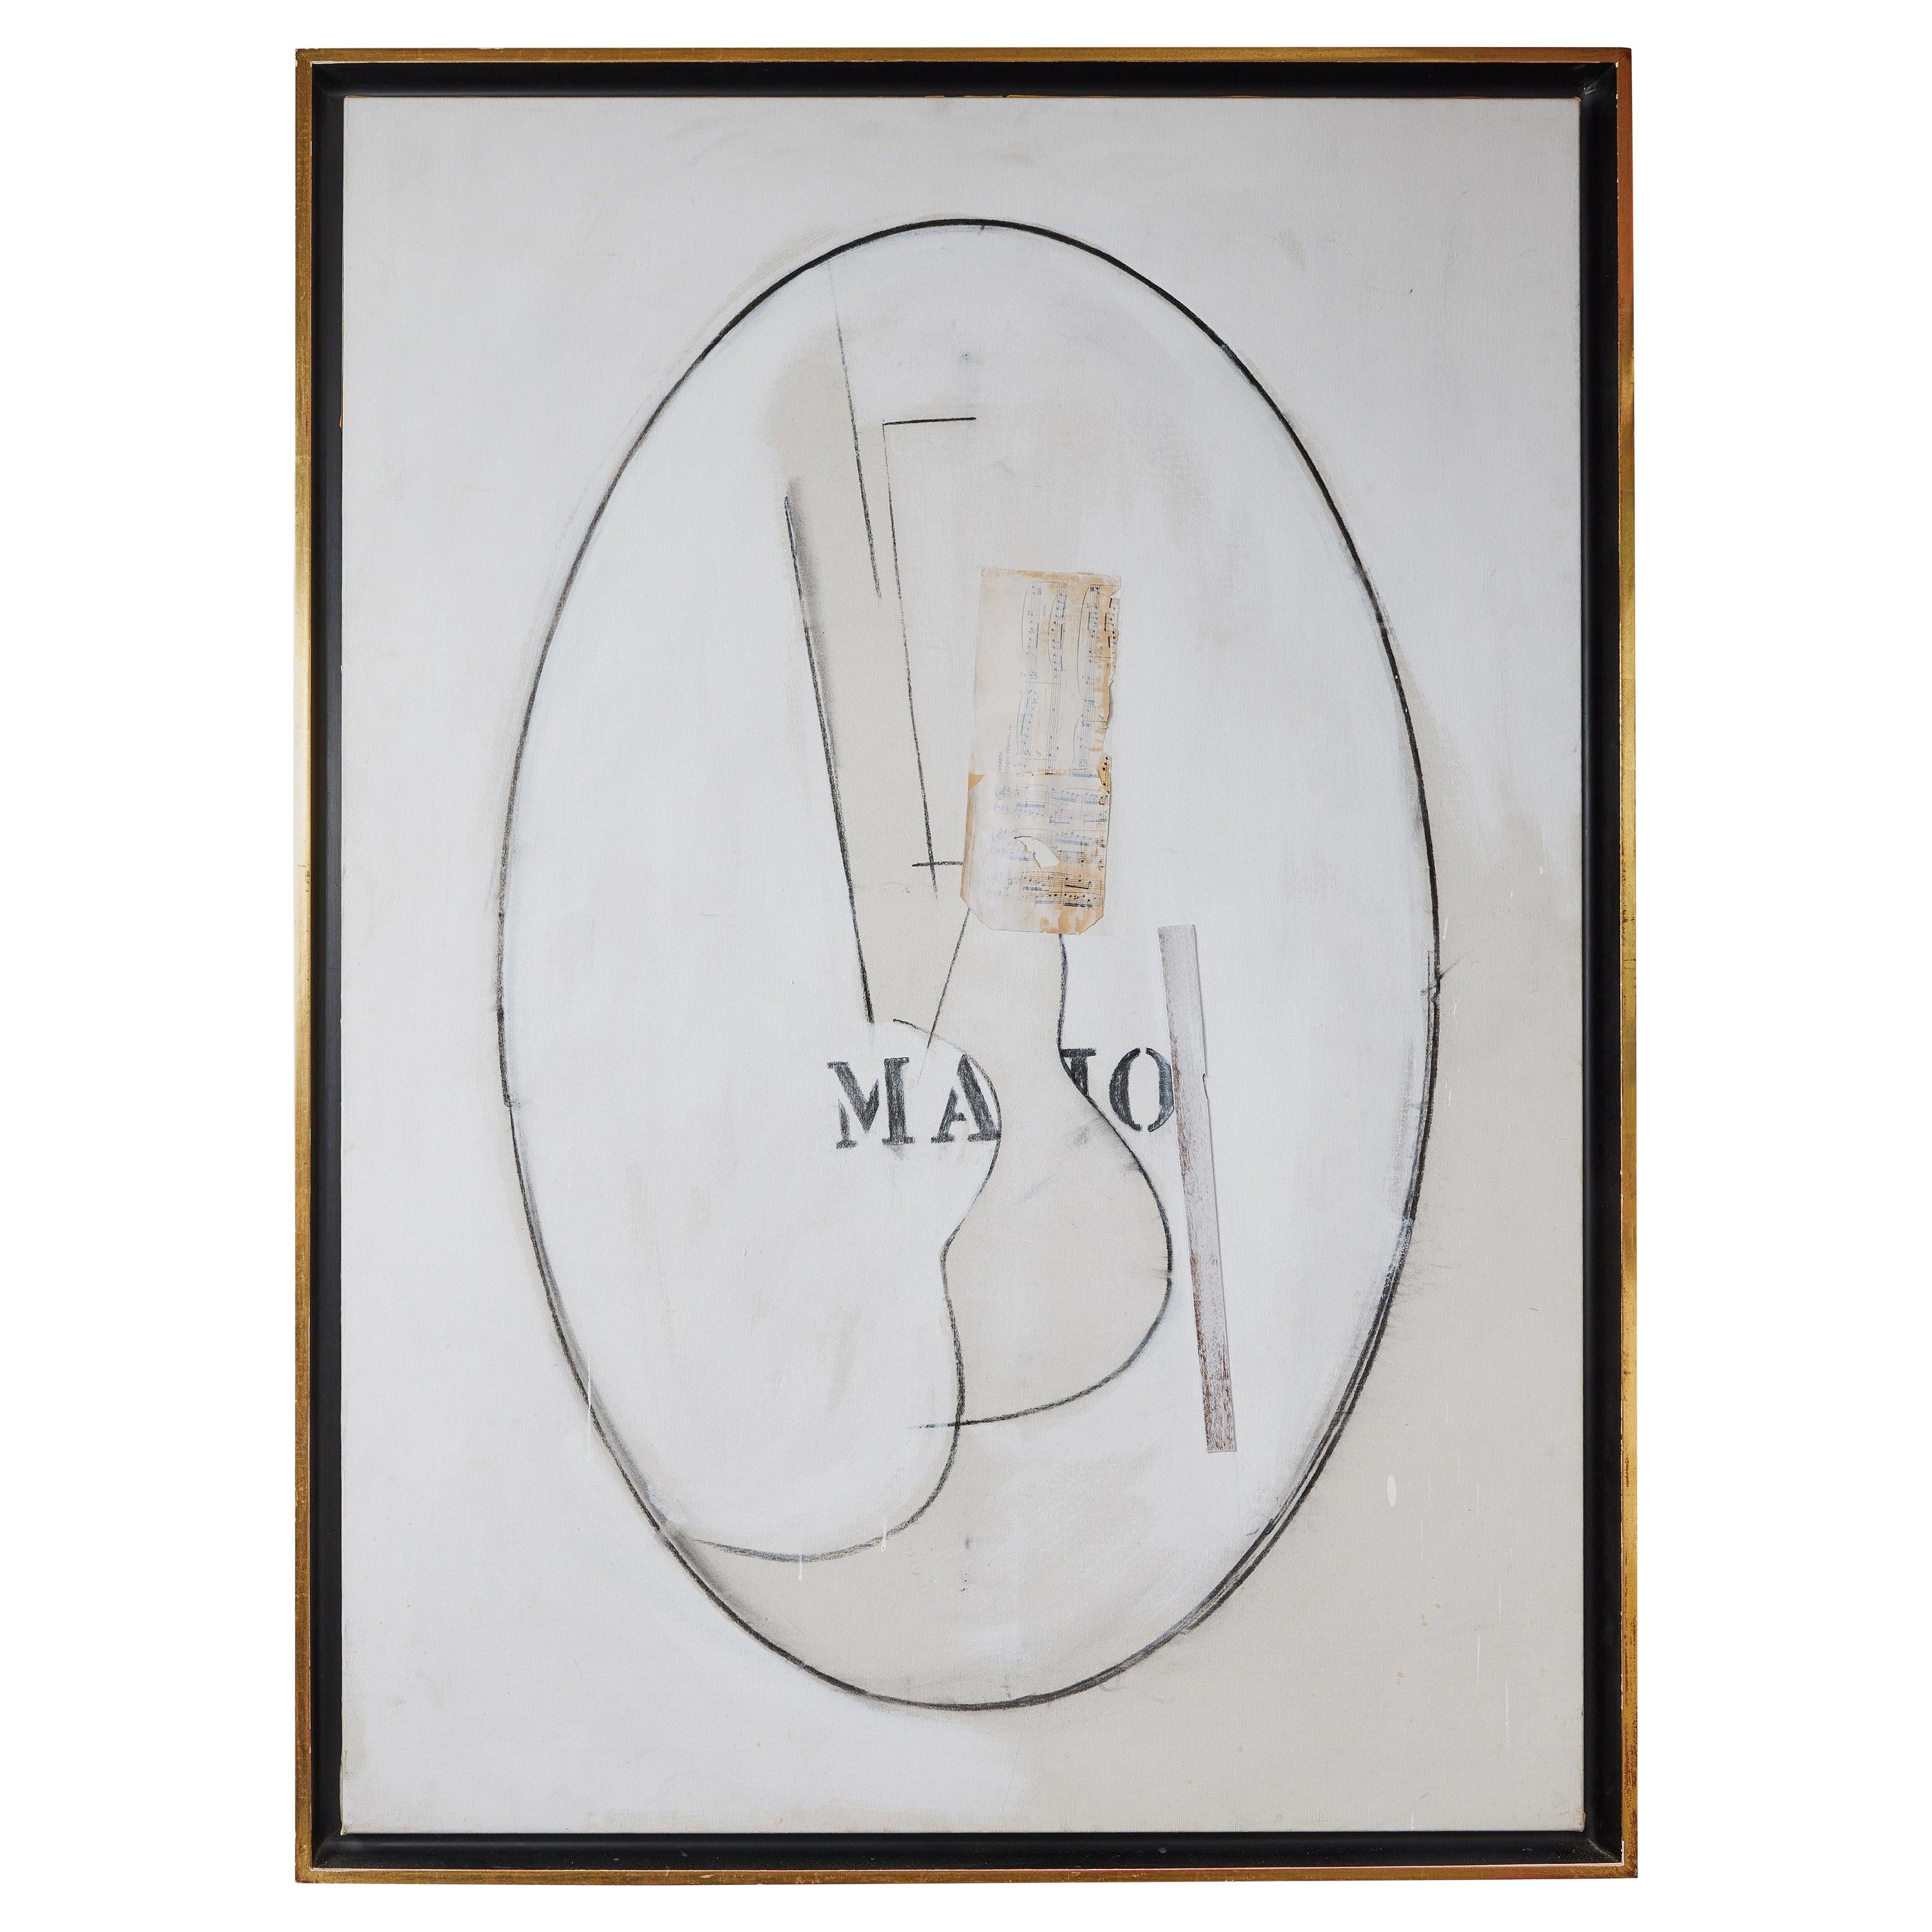 Eine signierte, datierte Collage aus Acryl, Kohle, Papier und Jute aus den 1970er Jahren von dem bekannten, unter Denkmalschutz stehenden amerikanischen Künstler Stephen Edlich (1944-1989) auf Leinwand. Rückseitig beschriftet mit Majo, 1976-1977.